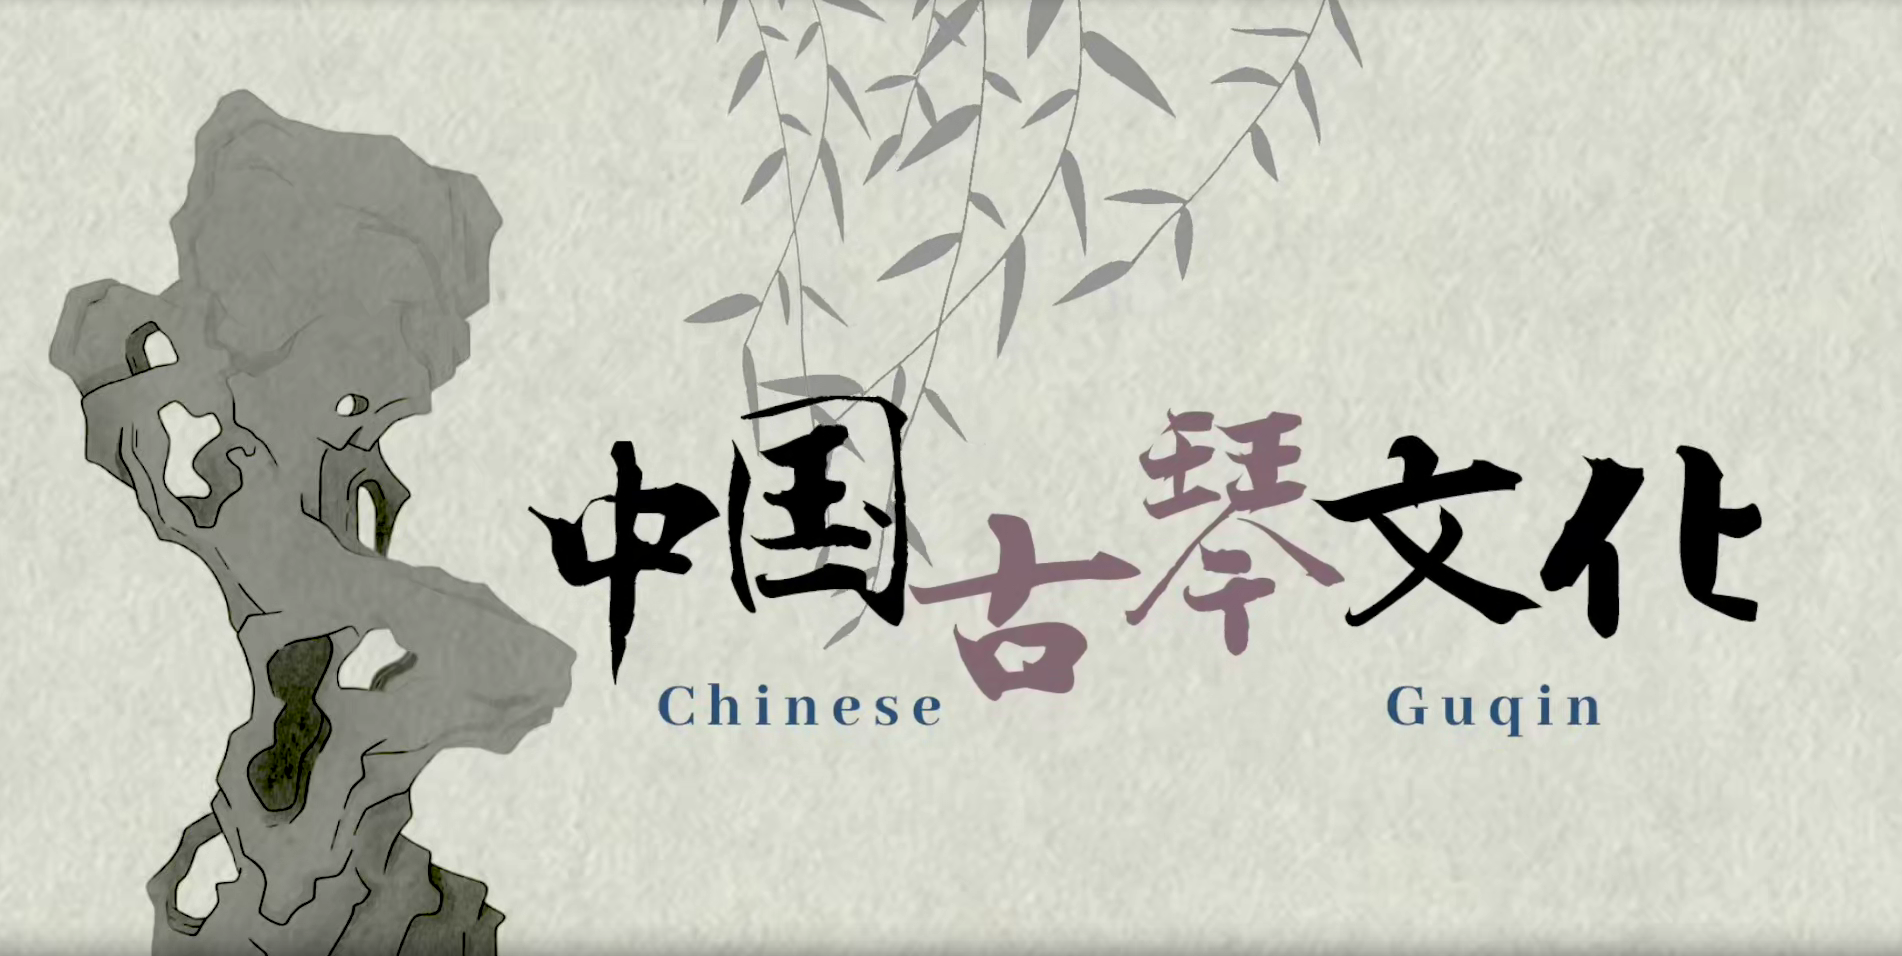 The Guqin Culture in China